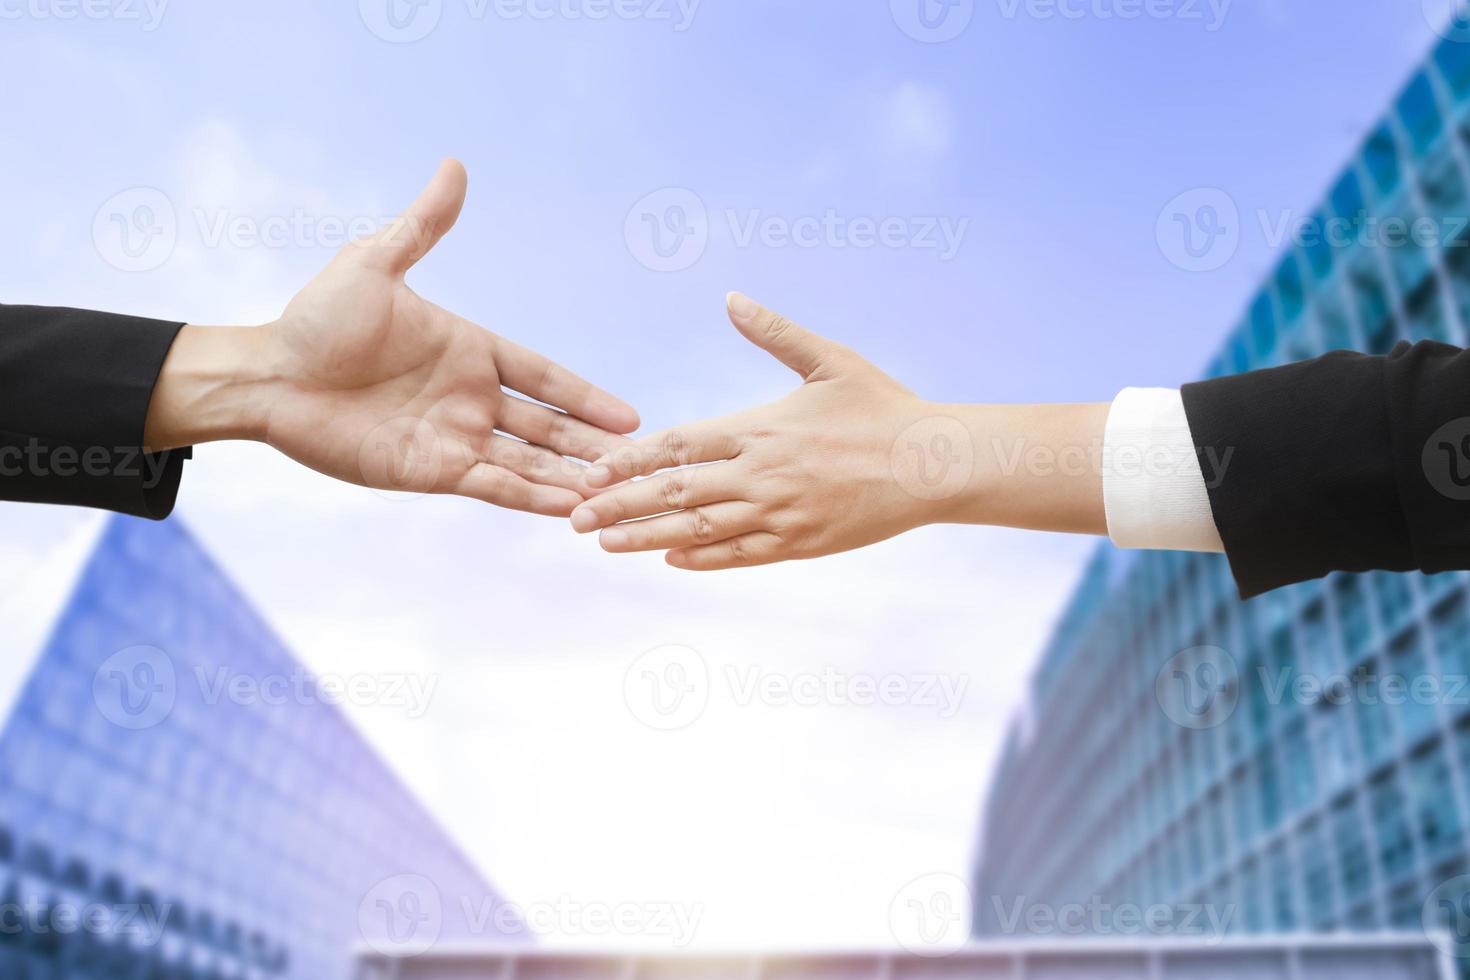 doppia esposizione della stretta di mano del partner commerciale tra un uomo e una donna su sfondo blu cielo, affare, stretta di mano su sfondo blu moderno, lavoro di squadra, supporto. solidarietà, compassione, foto